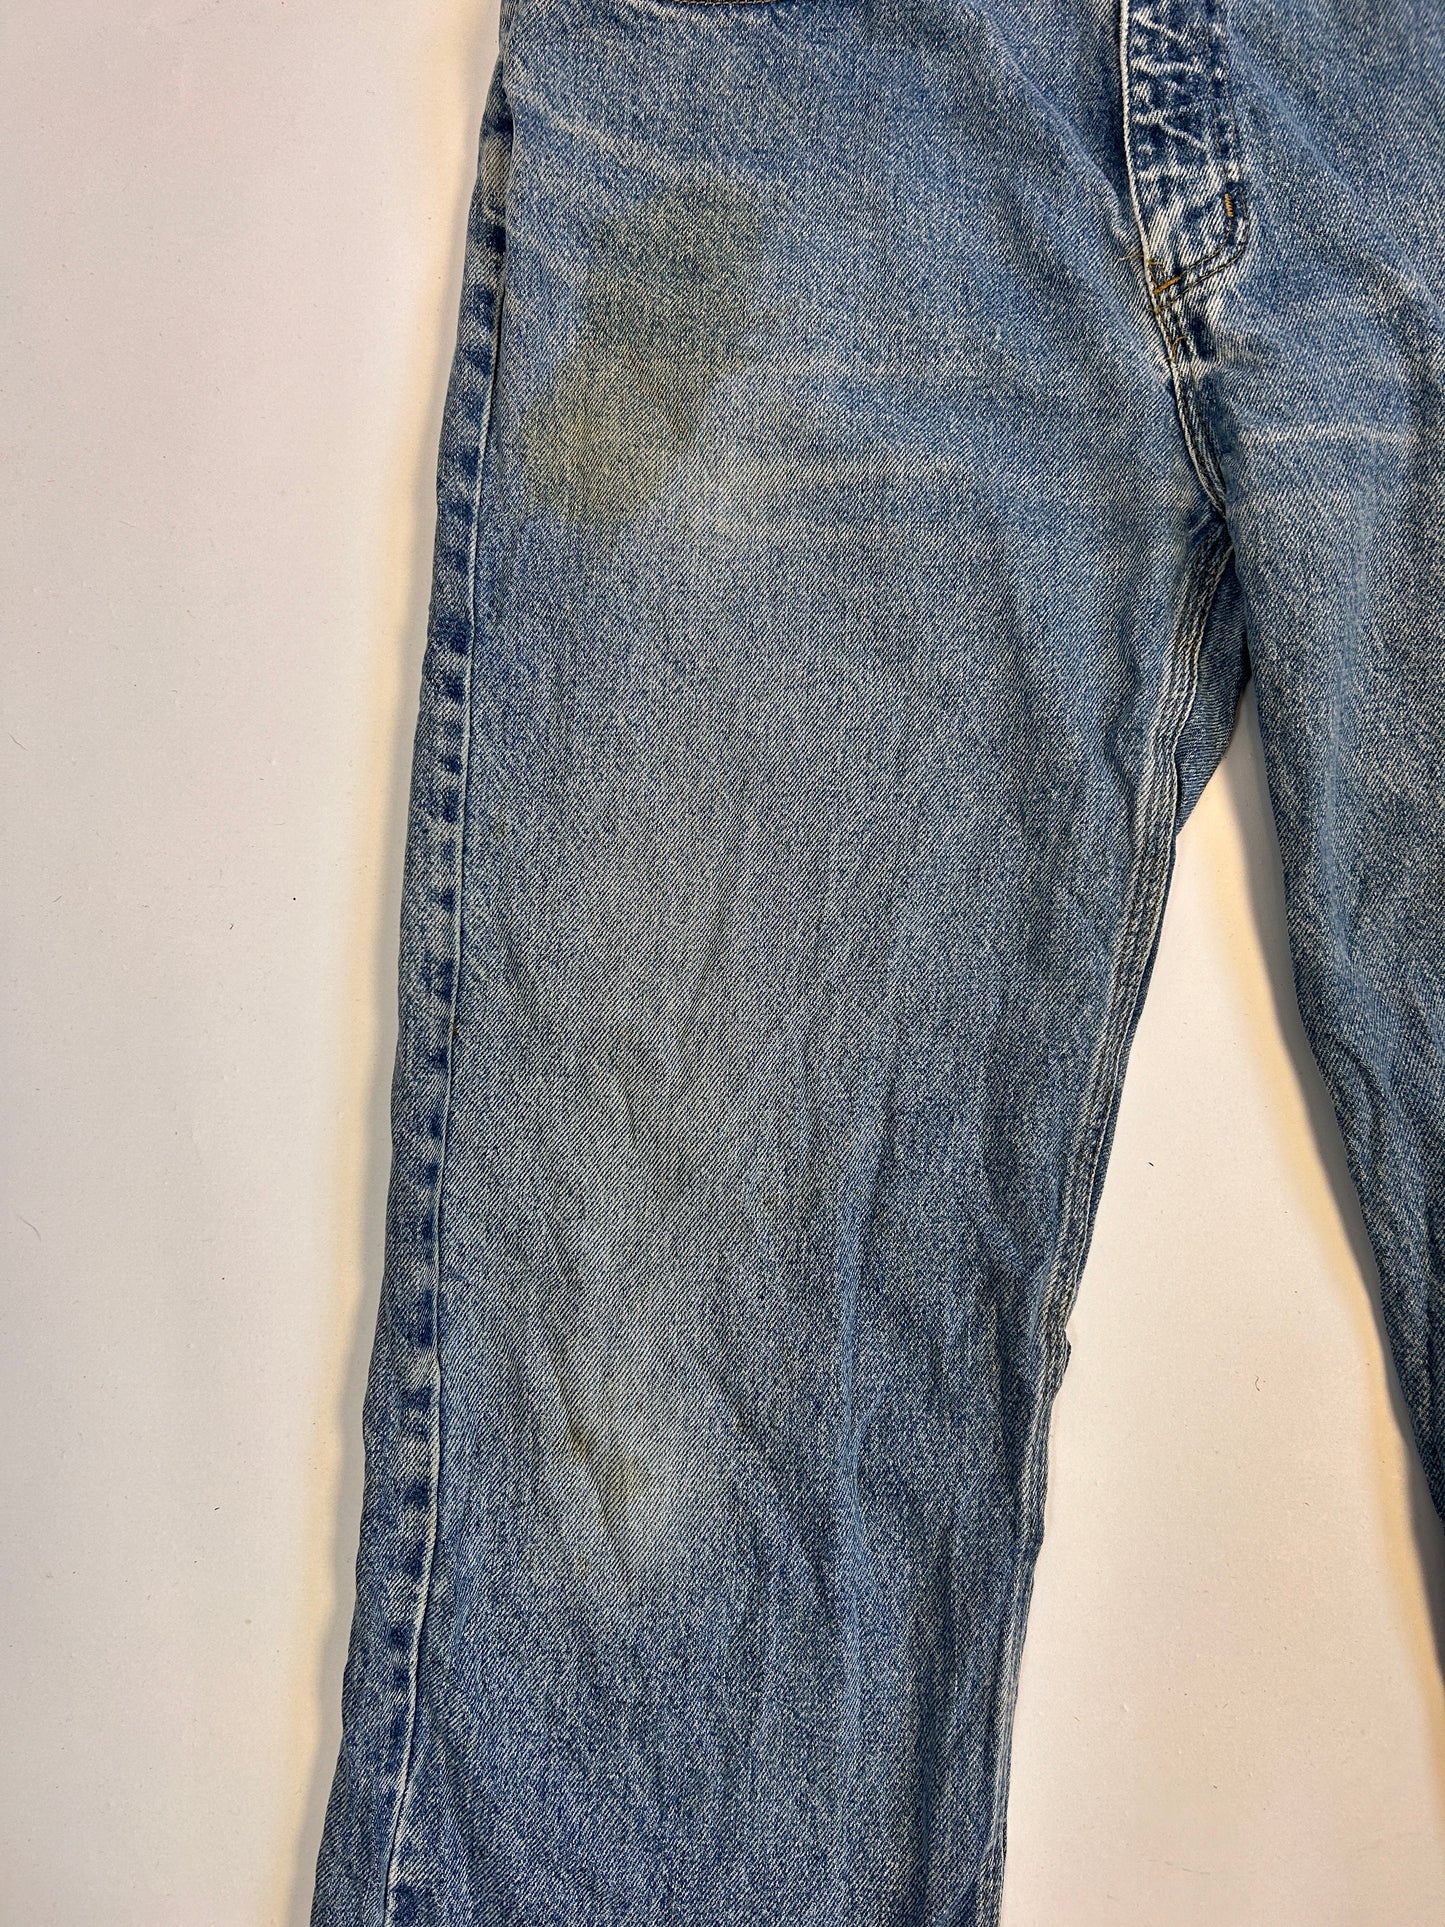 Blå Carhartt bukser - 36x32